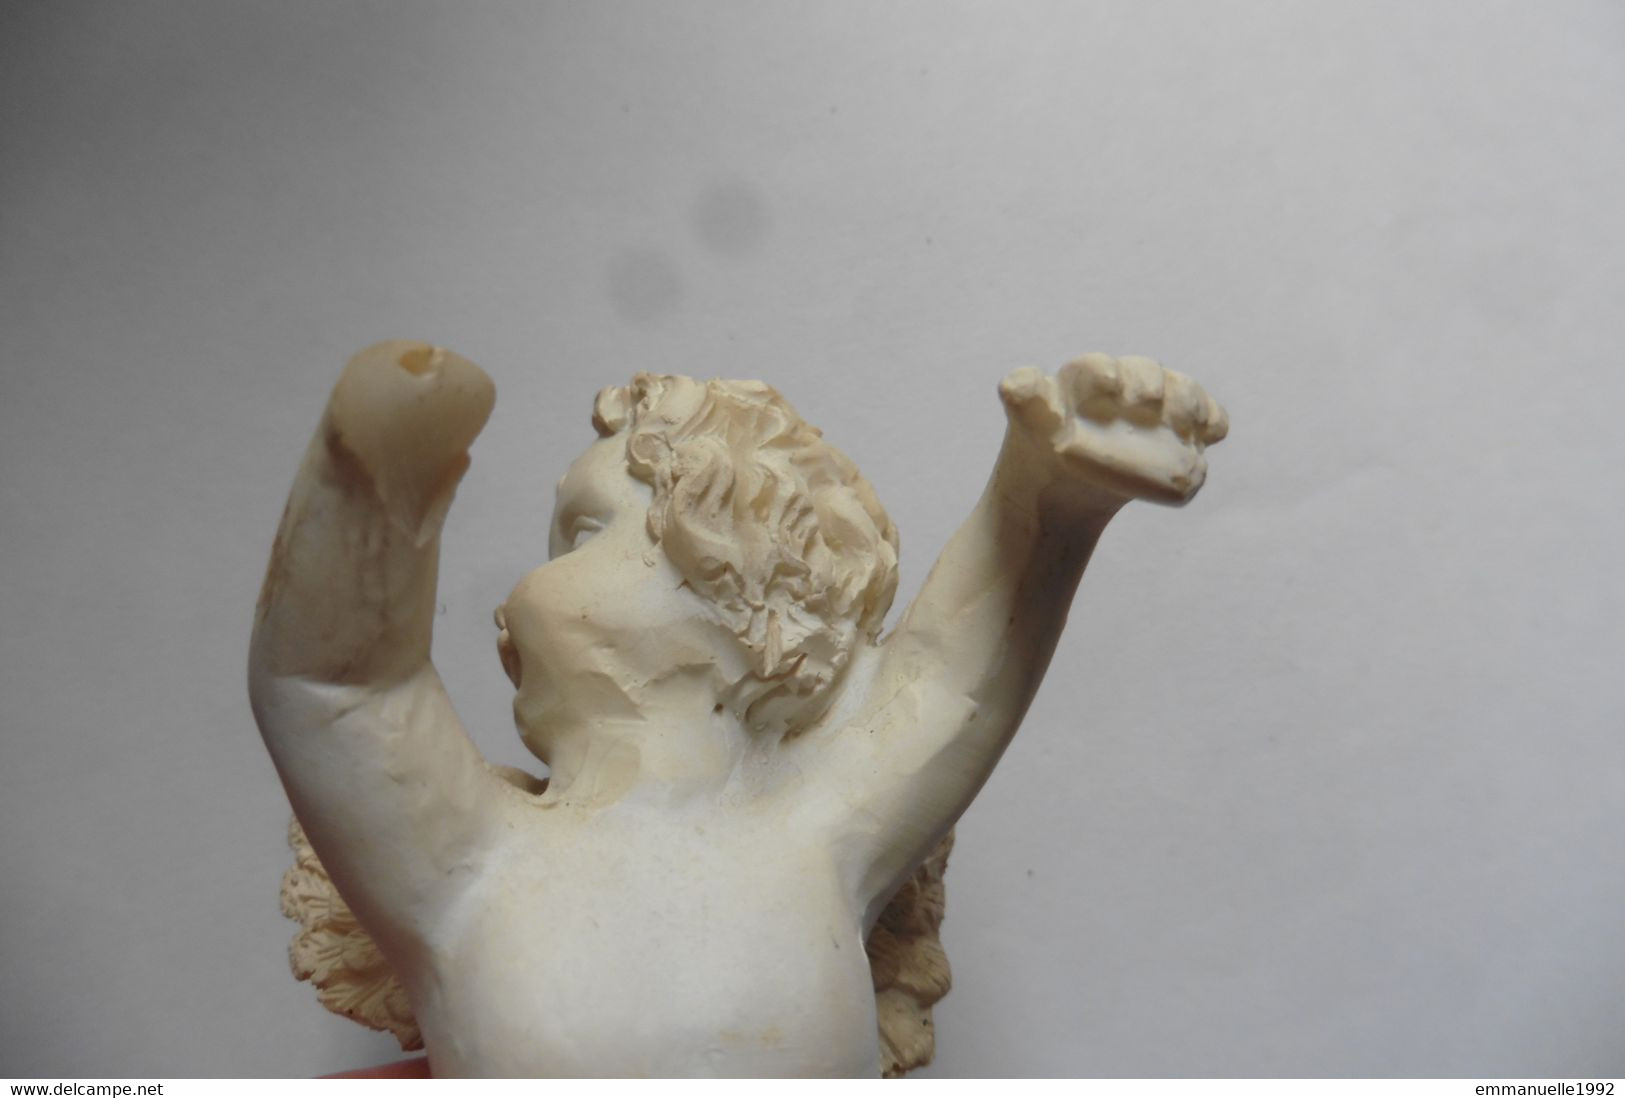 Bibelot figurine Ange blanc ailé sculpté céramique stuc ou résine façon plâtre - objet décoration vitrine